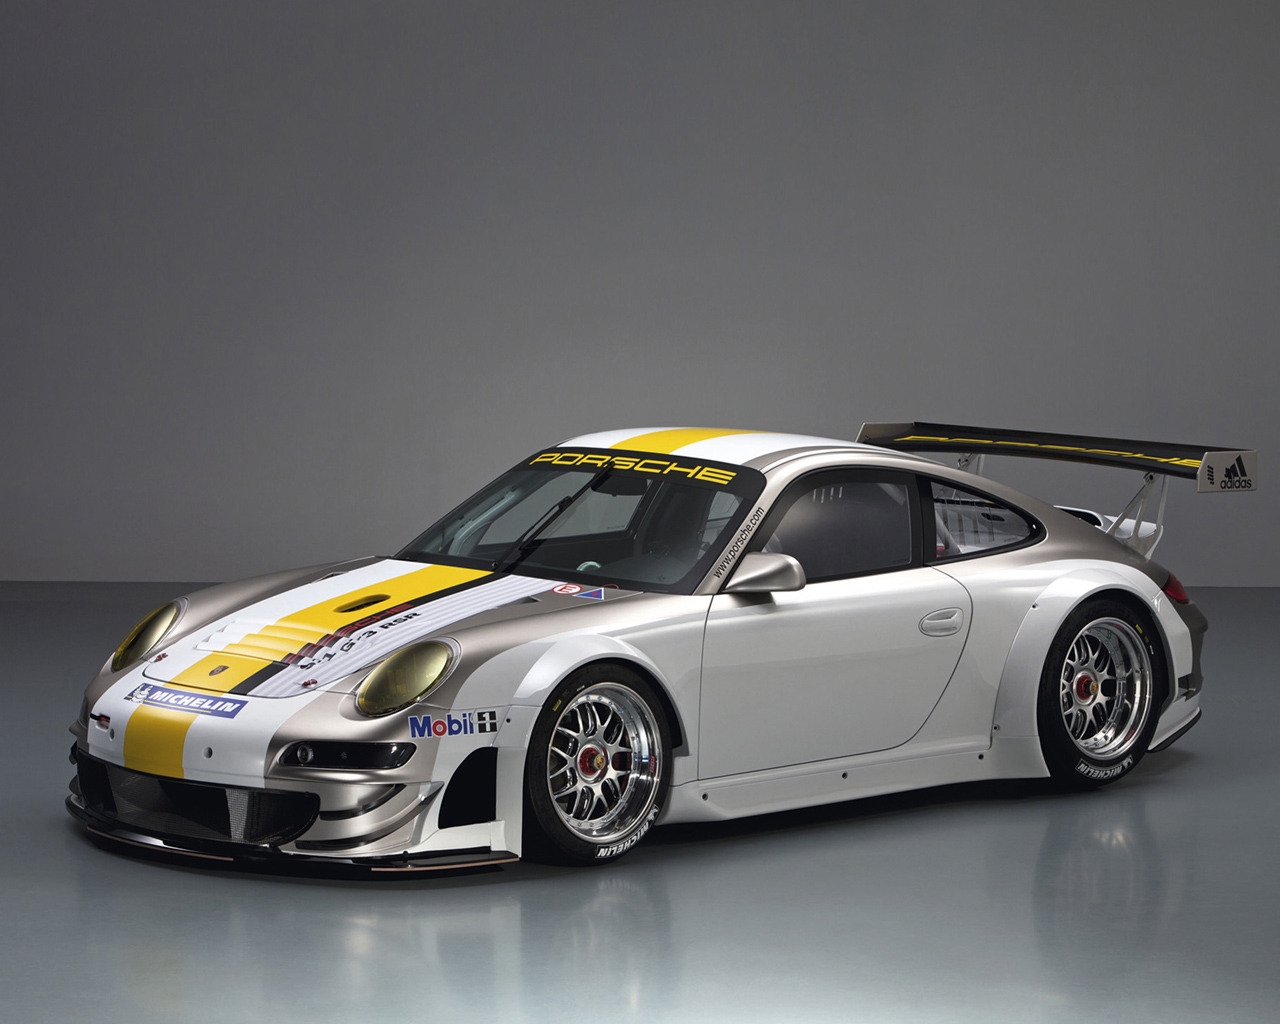 Porsche 911 GT3 RSR Studio for 1280 x 1024 resolution